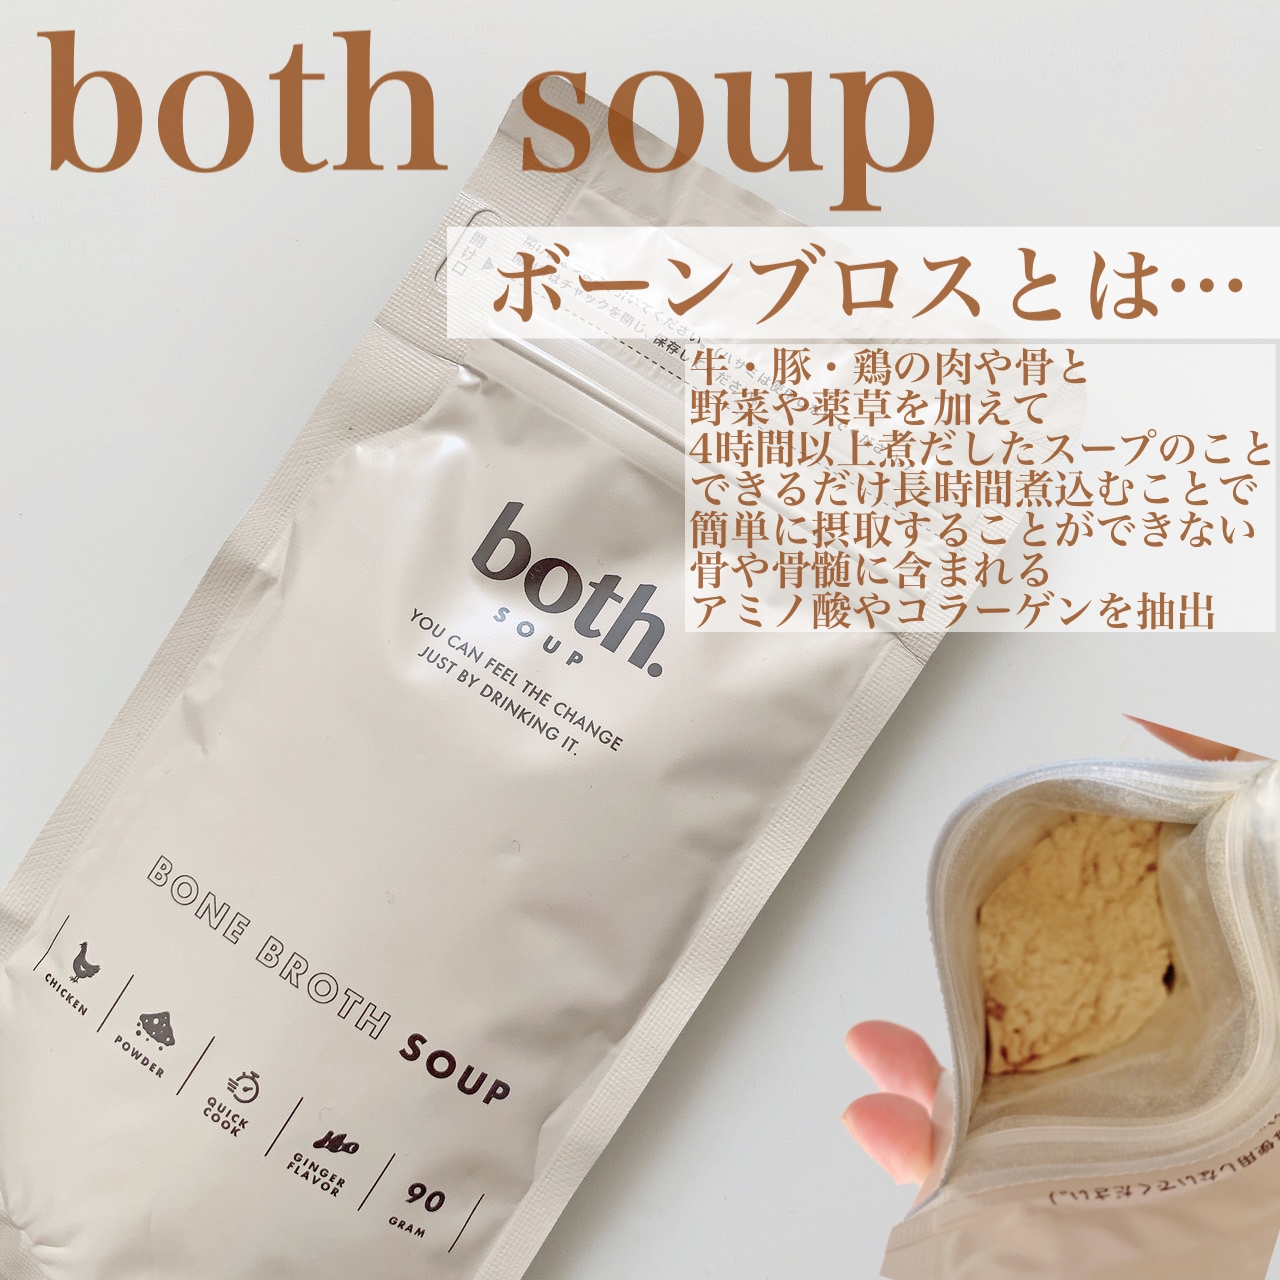 both soup
ボーンブロススープの良い点・メリットに関するまみやこさんの口コミ画像2